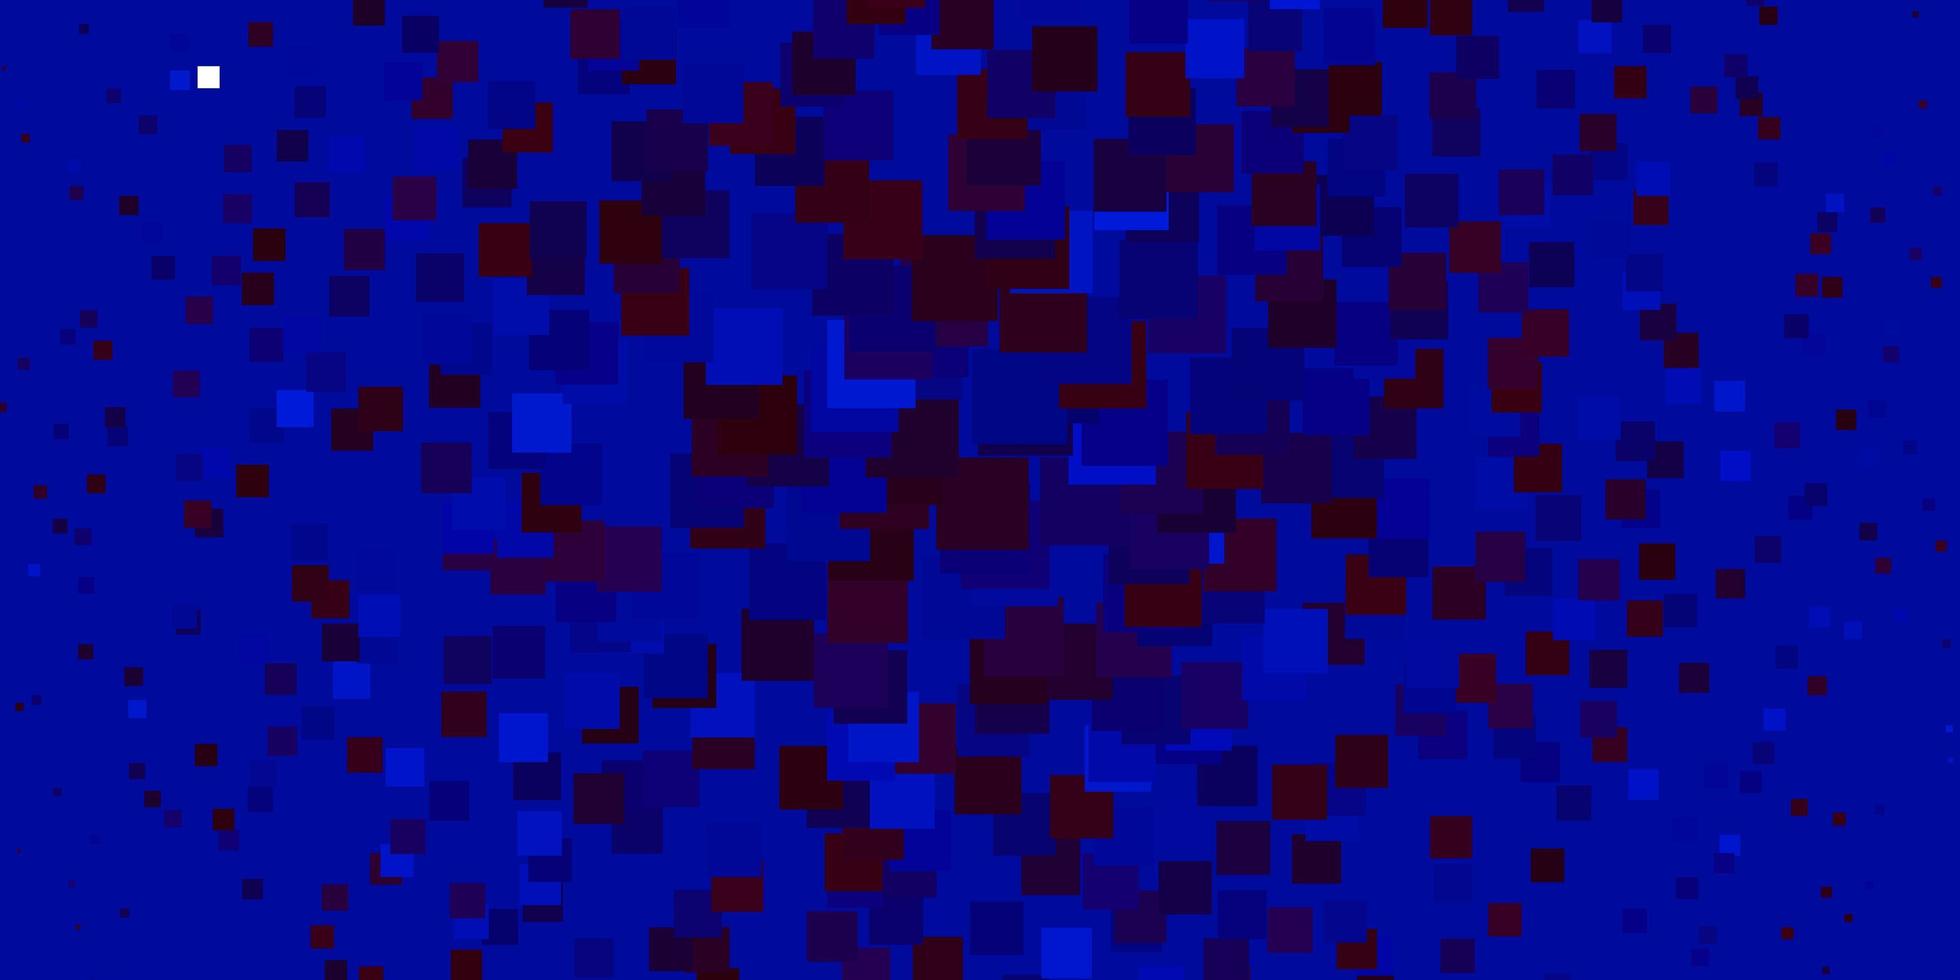 luz azul, vermelho padrão de vetor em estilo quadrado.